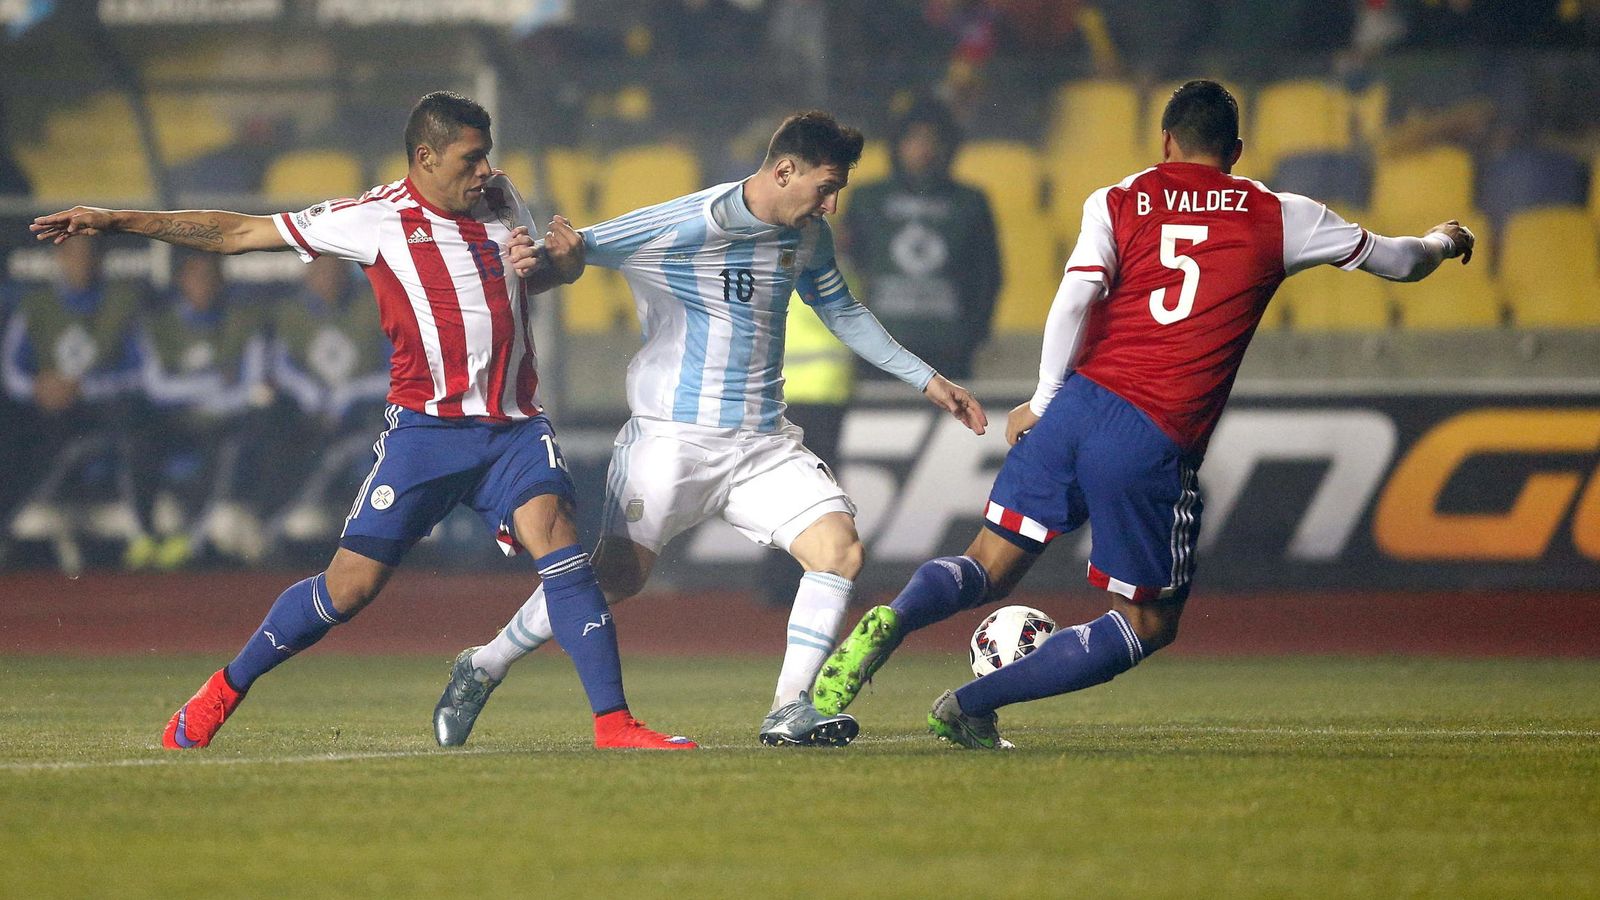 Foto: Messi brilló en el partido jugado en Concepción (Efe)